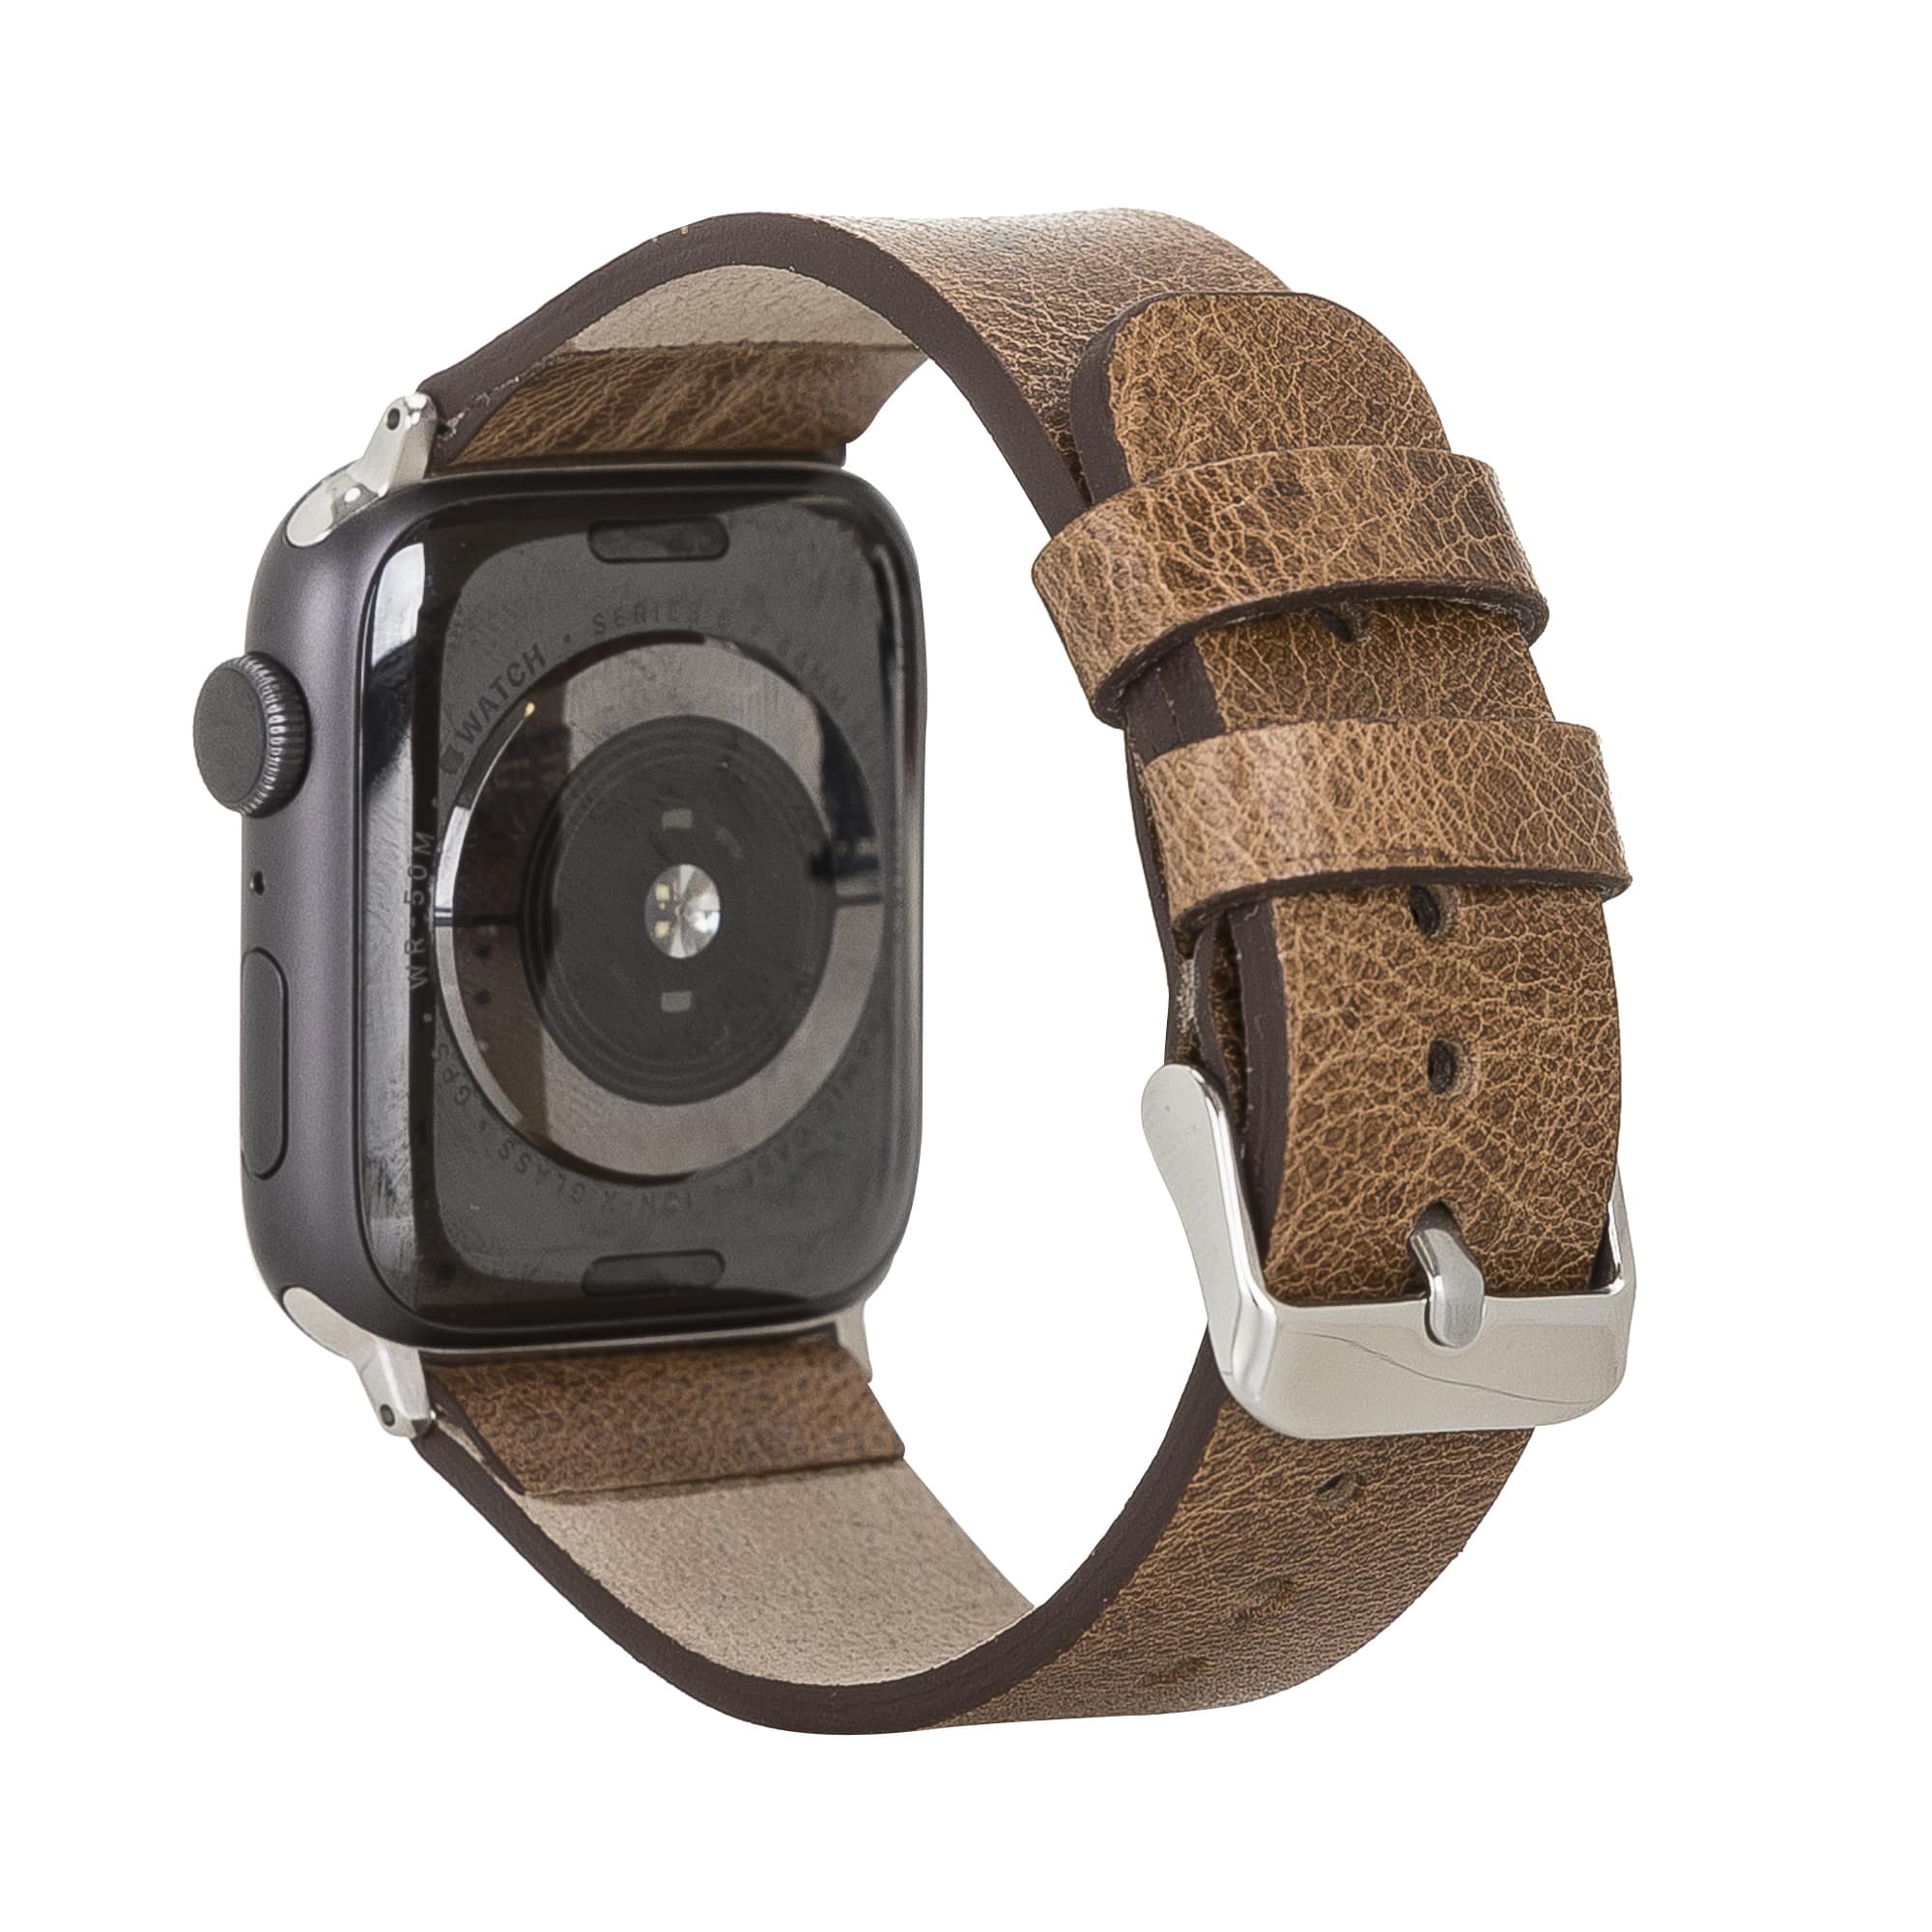 COACH Apple Watch® Stainless Steel Bracelet 42mm/44mm/45mm